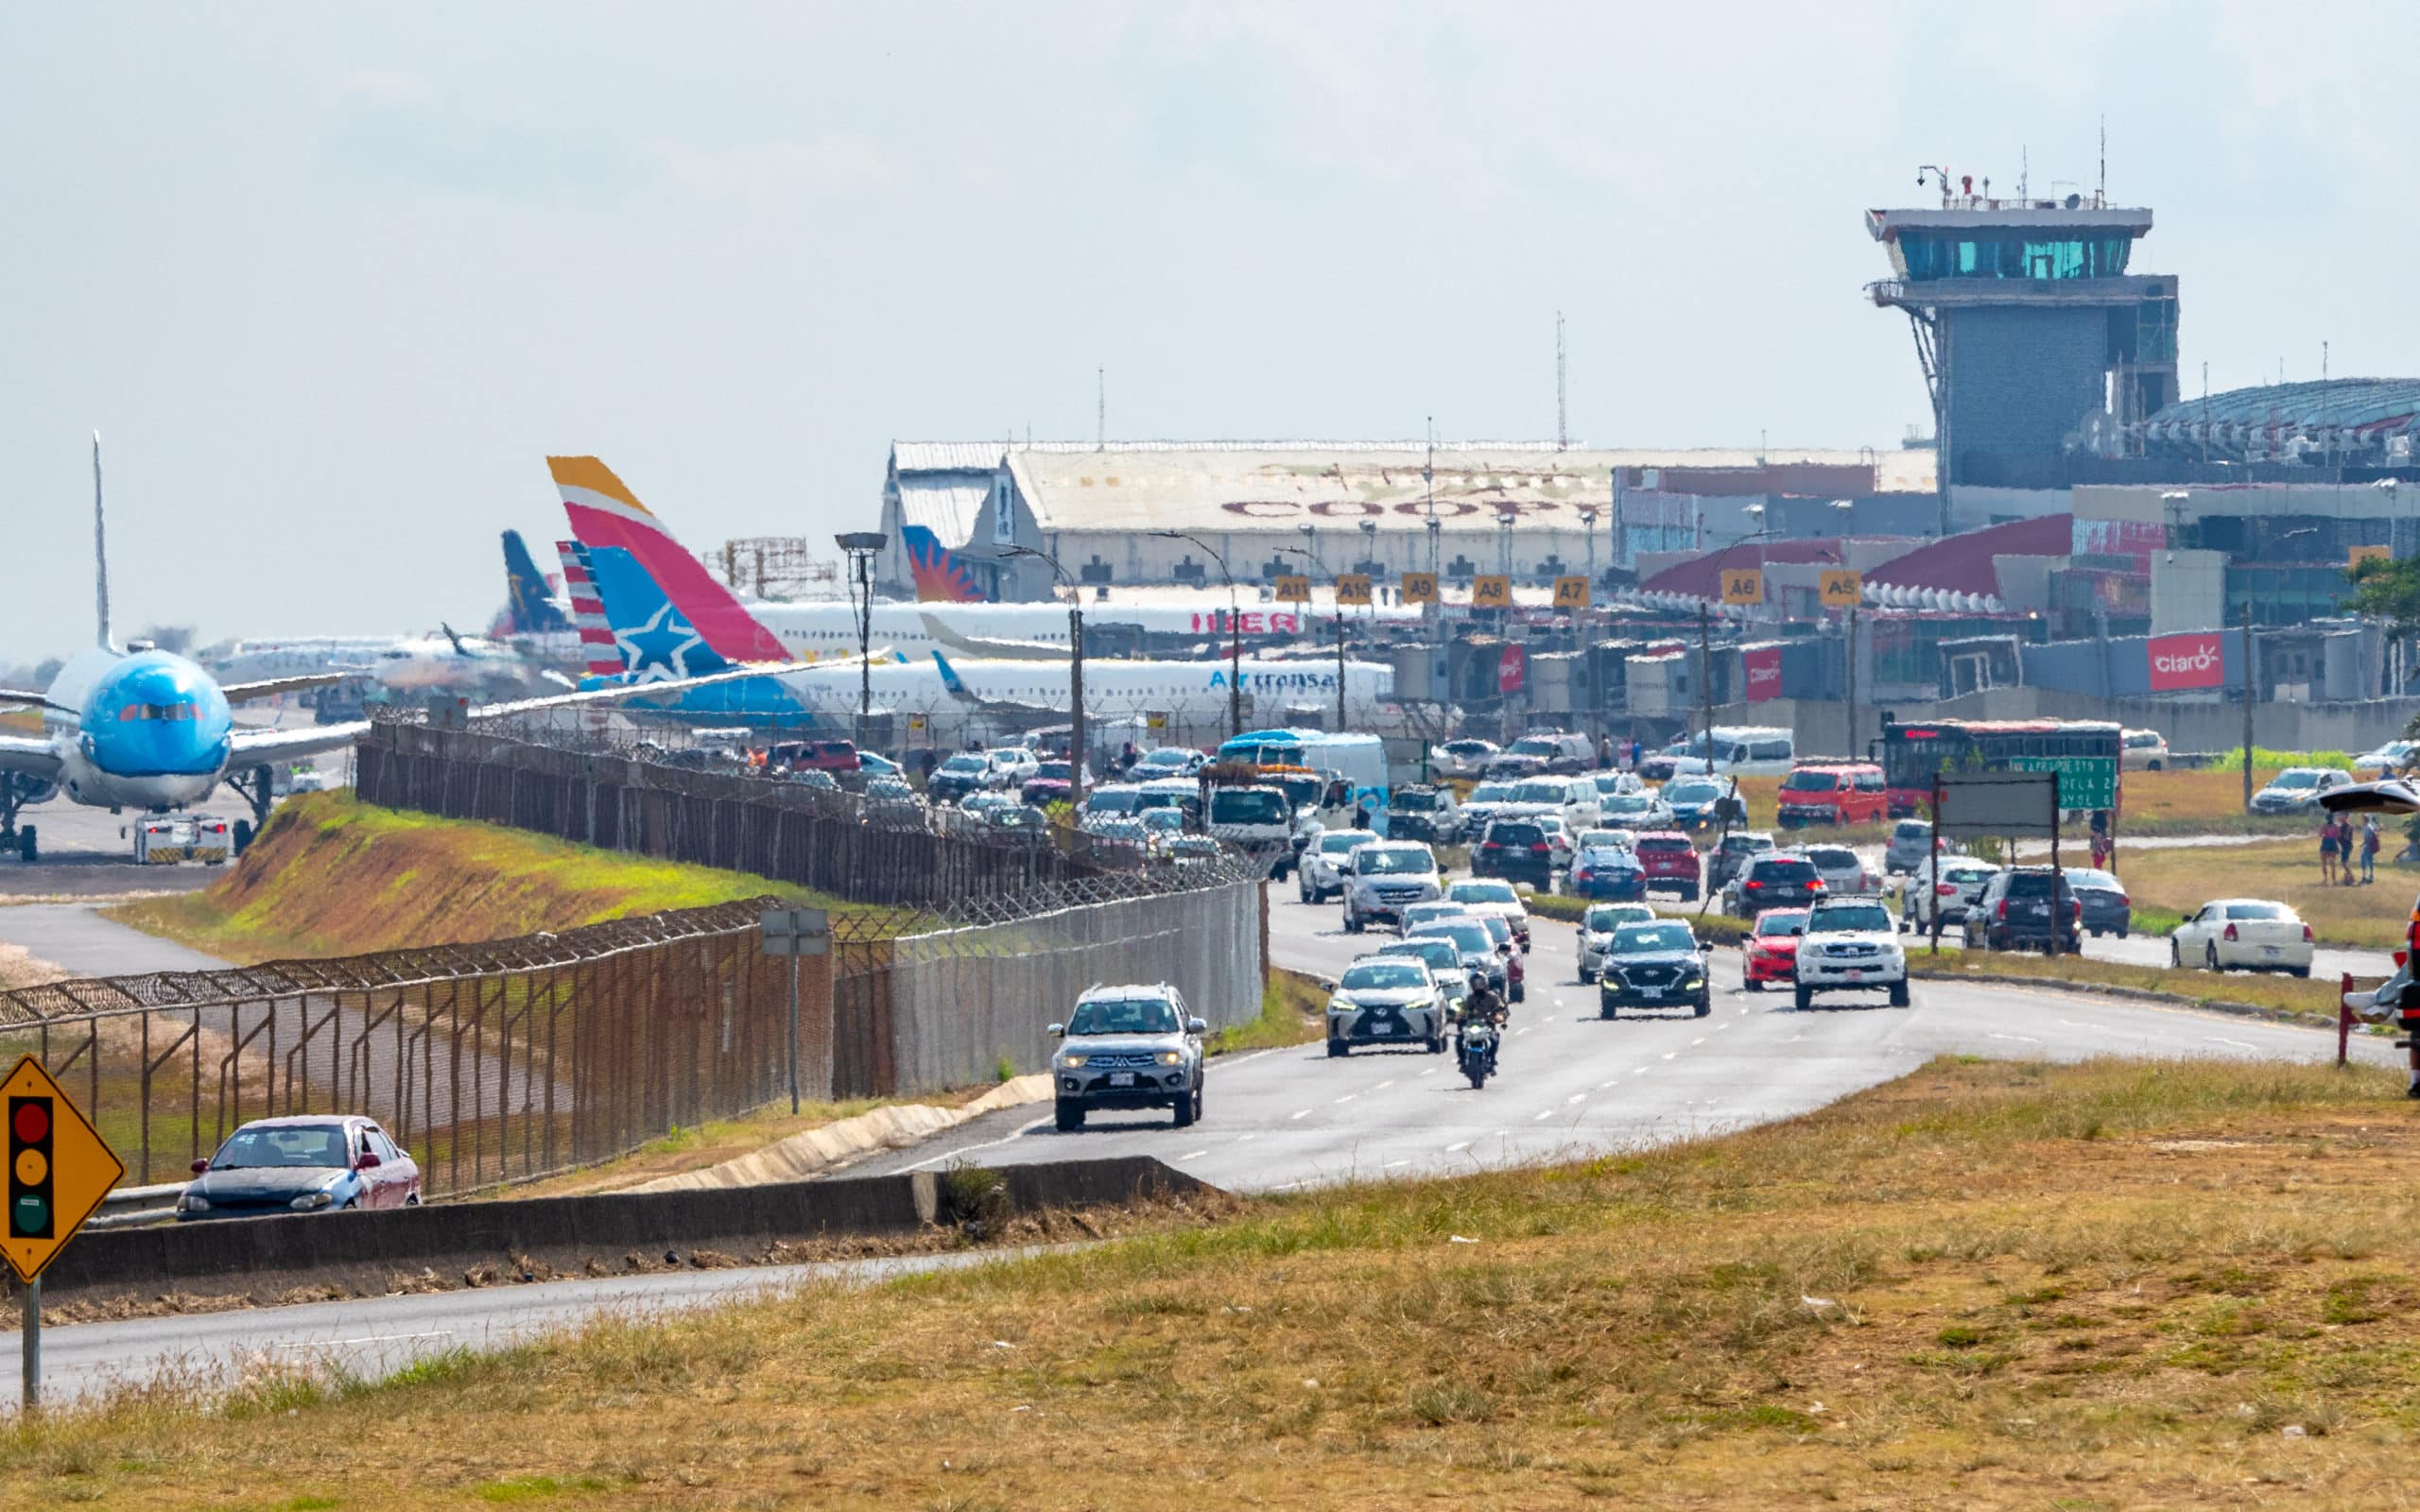 Recientes cierres de los aeropuertos por falta de personal generan “graves daños” a la marca país, reconoce el Gobierno  